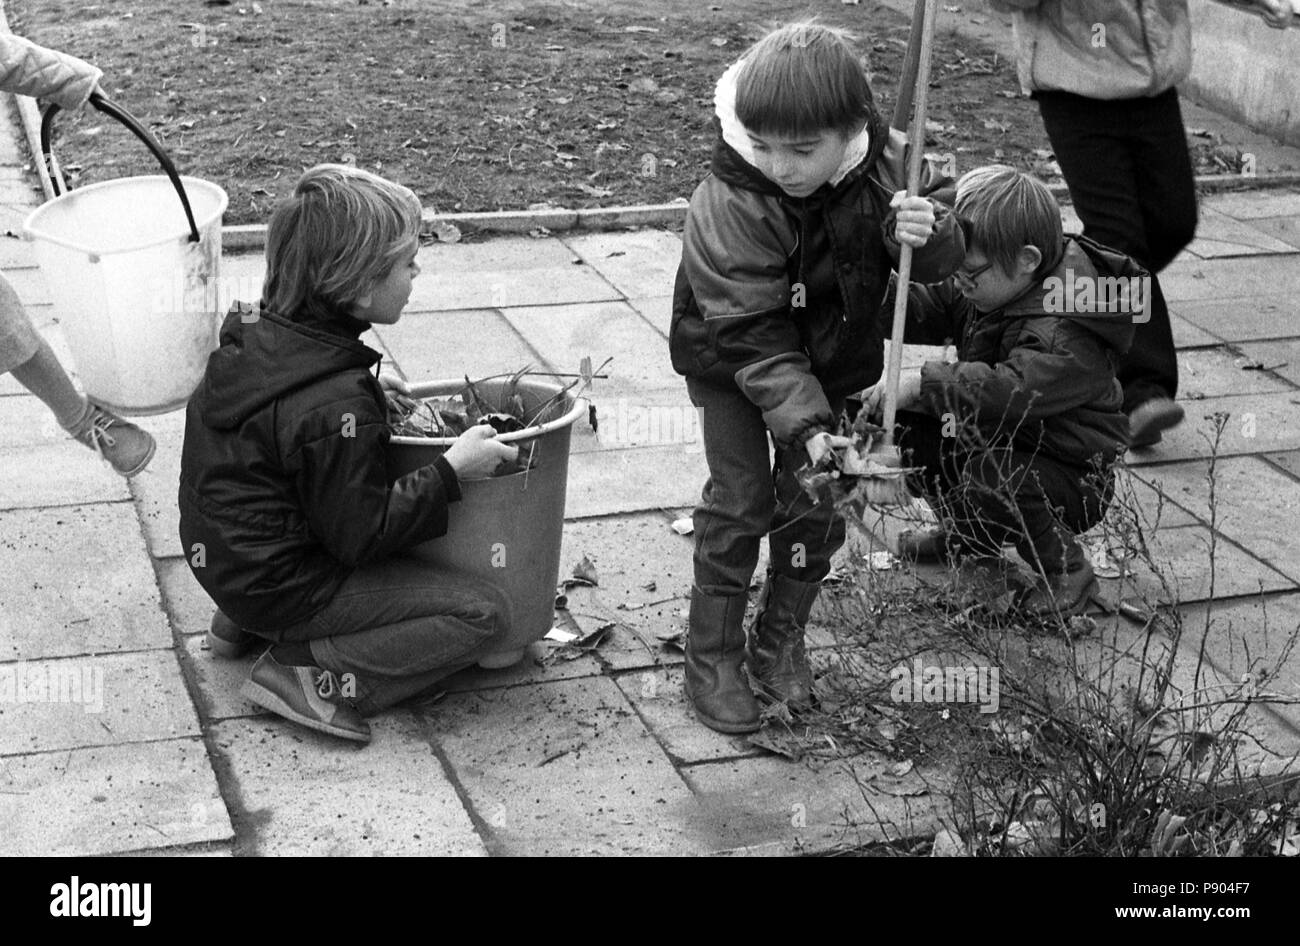 Berlin, DDR, Kinder in eine Kindertagesstätte Hilfe bei Gartenarbeit  Stockfotografie - Alamy